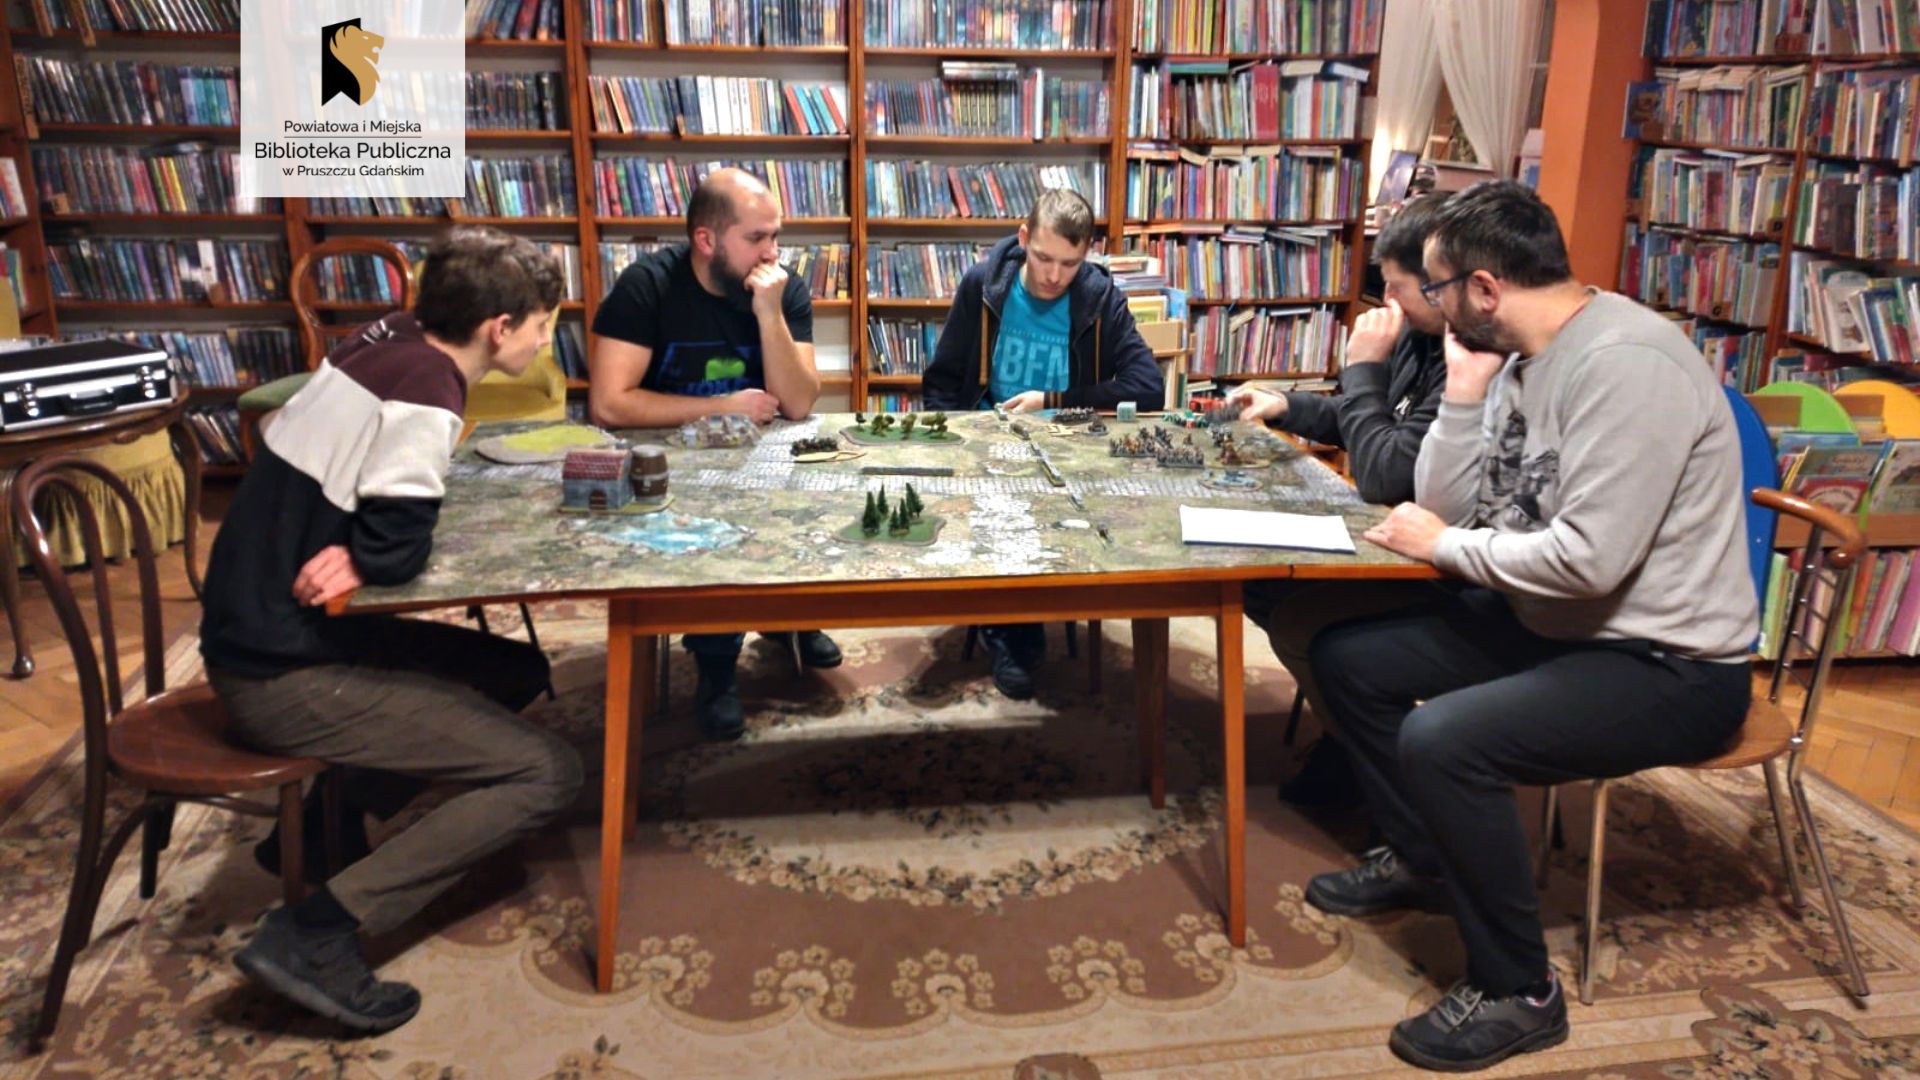 Sześć osób siedzi wokół dużego, prostokątnego stołu, na którym rozłożona jest wielka plansza do gry. Na planszy różne figurki postaci, drzew i budynków.